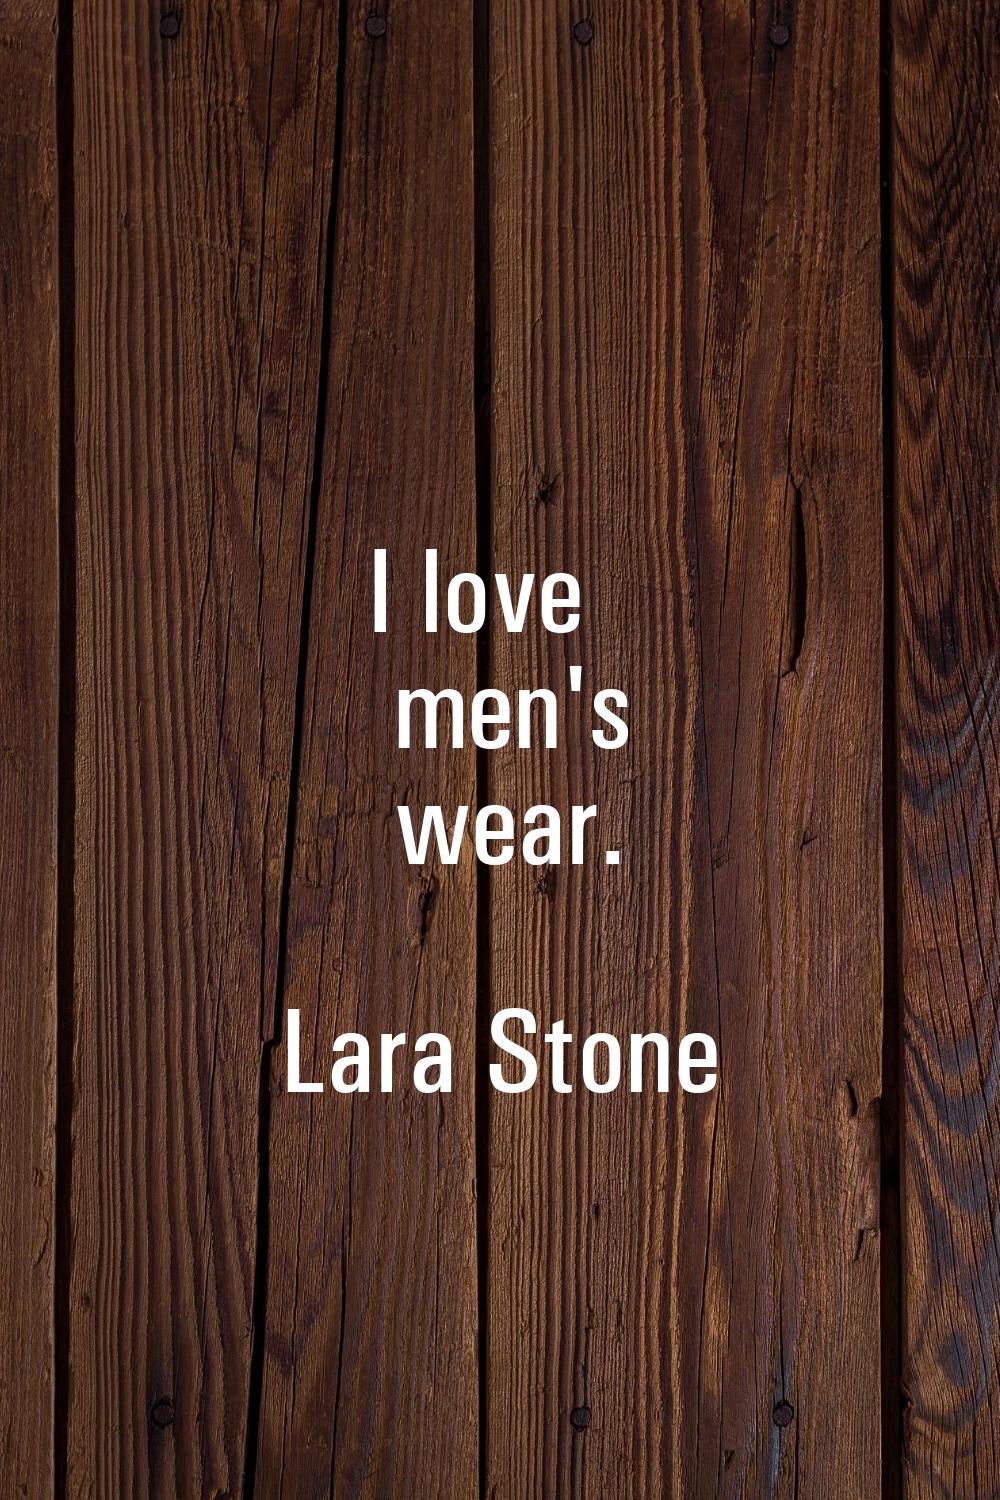 I love men's wear.